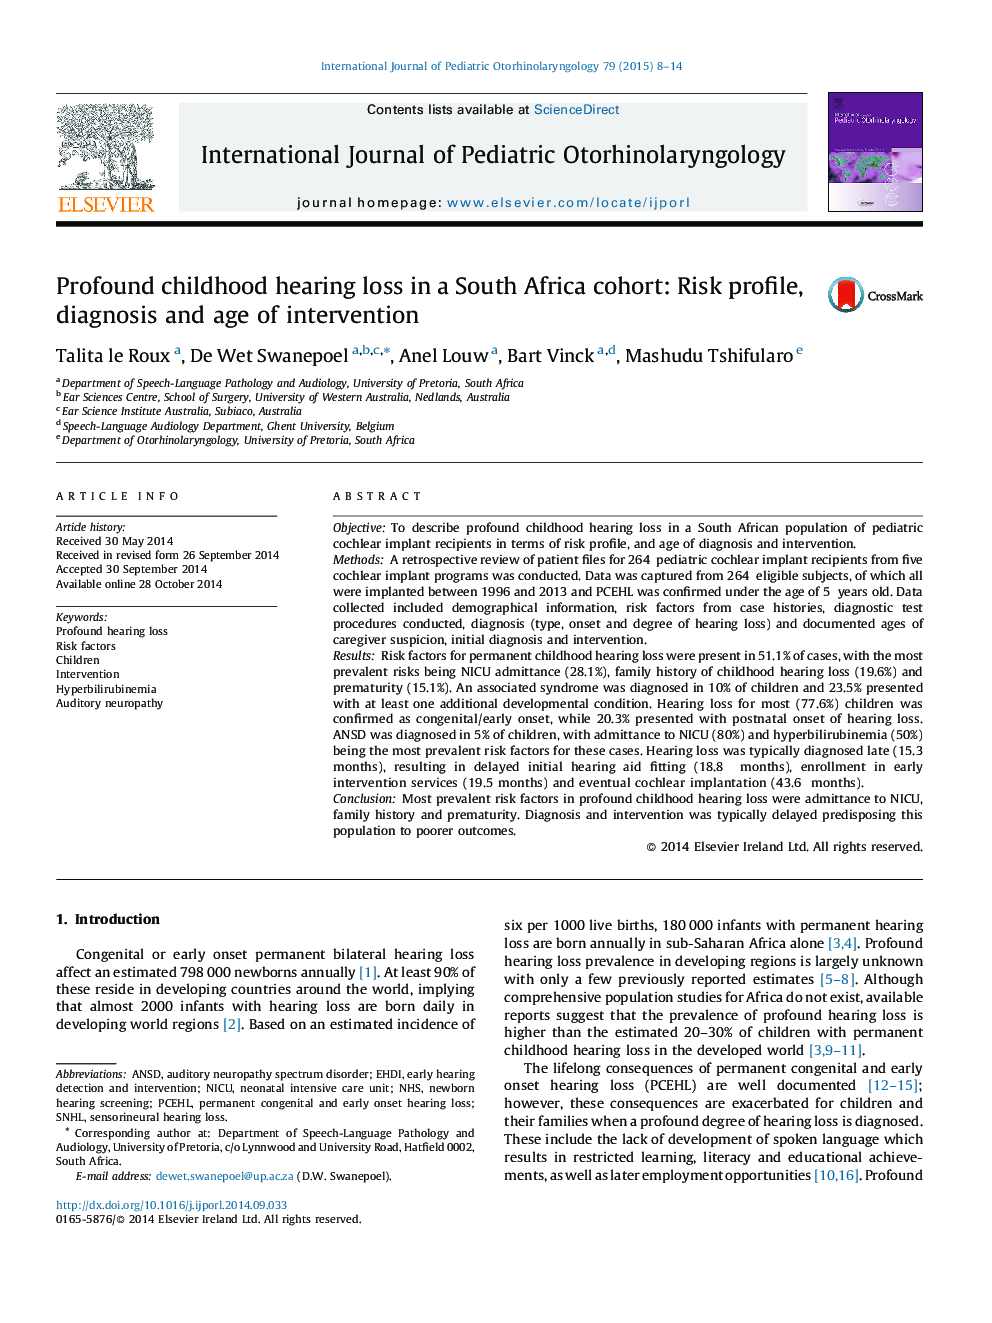 کاهش شنوایی شدید دوران کودکی در یک گروه آفریقای جنوبی: مشخصات ریسک، تشخیص و سن مداخله 